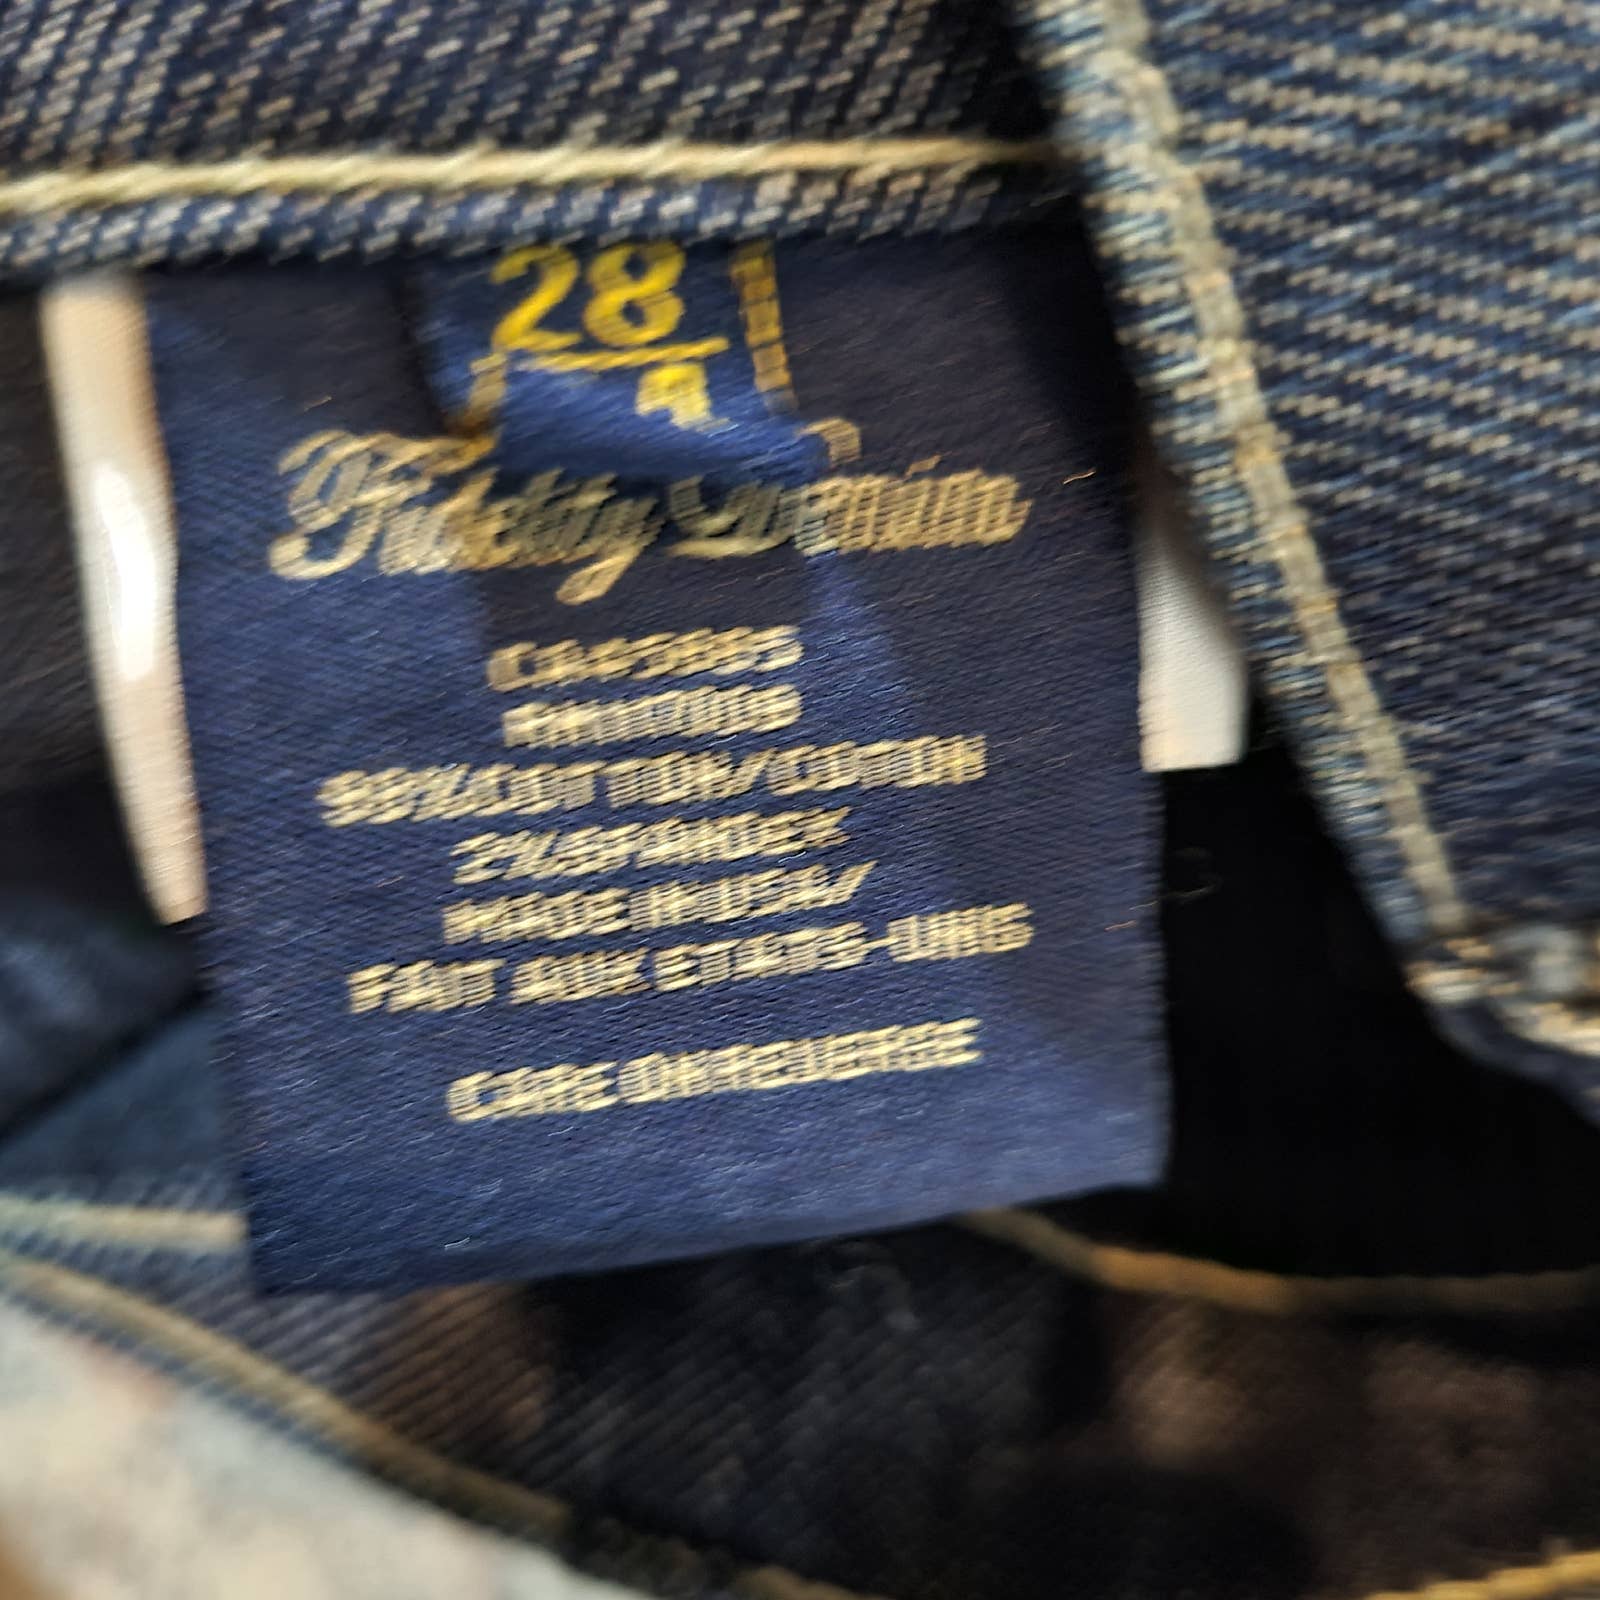 Fidelity Denim Tiger Lily Low Waist Boot Cut Jeans - Size 28Markita's ClosetFidelity Denim